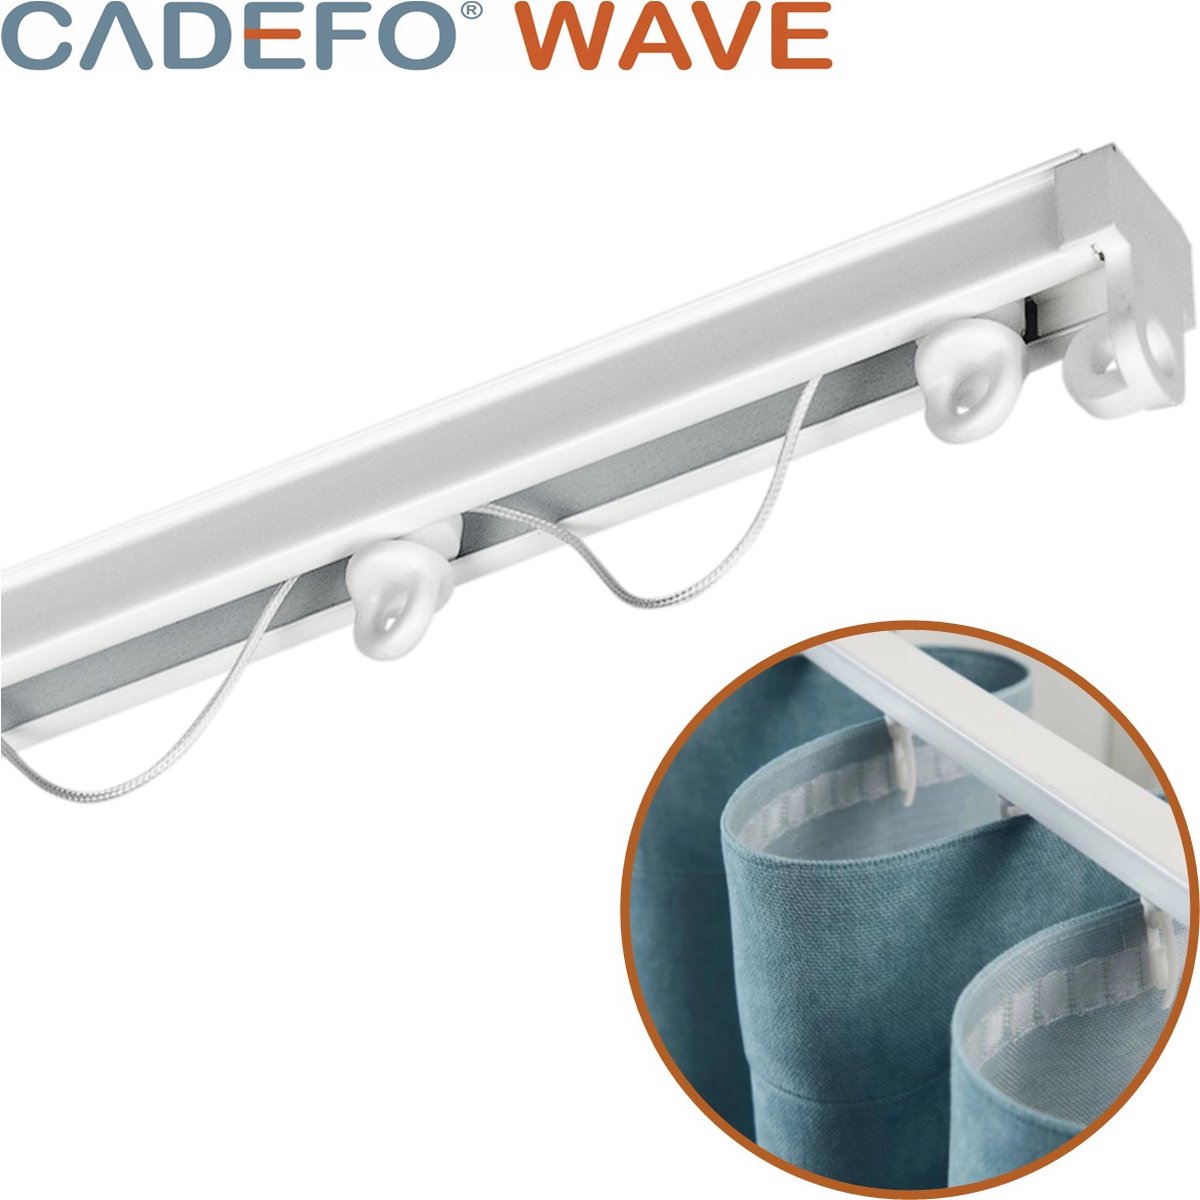 CADEFO WAVE (551 - 600 cm) Gordijnrails - Compleet op maat! - UIT 1 STUK - Leverbaar tot 6 meter - Plafondbevestiging - Lengte 573 cm